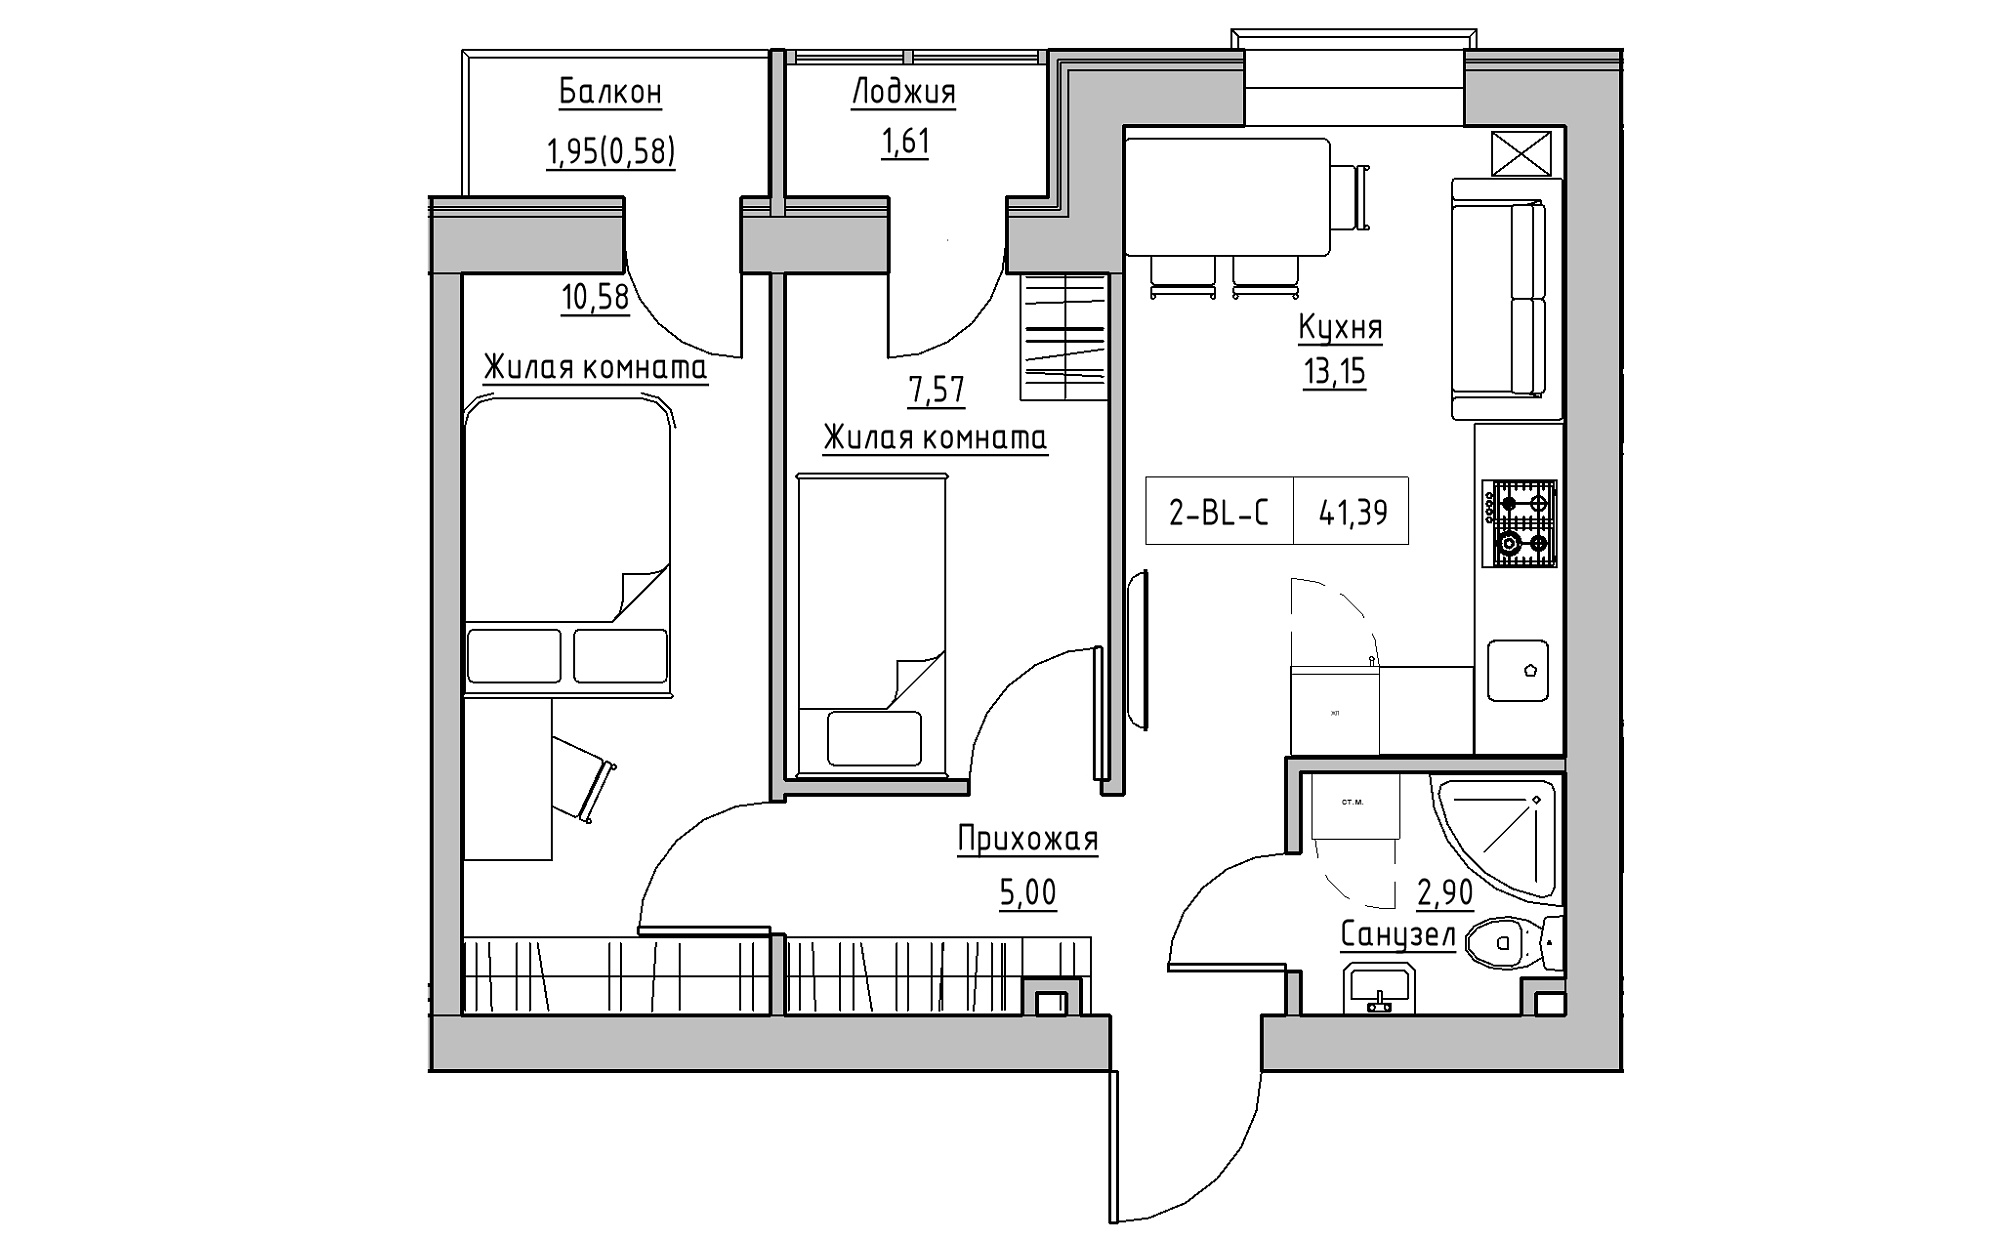 Планування 2-к квартира площею 41.39м2, KS-022-04/0005.